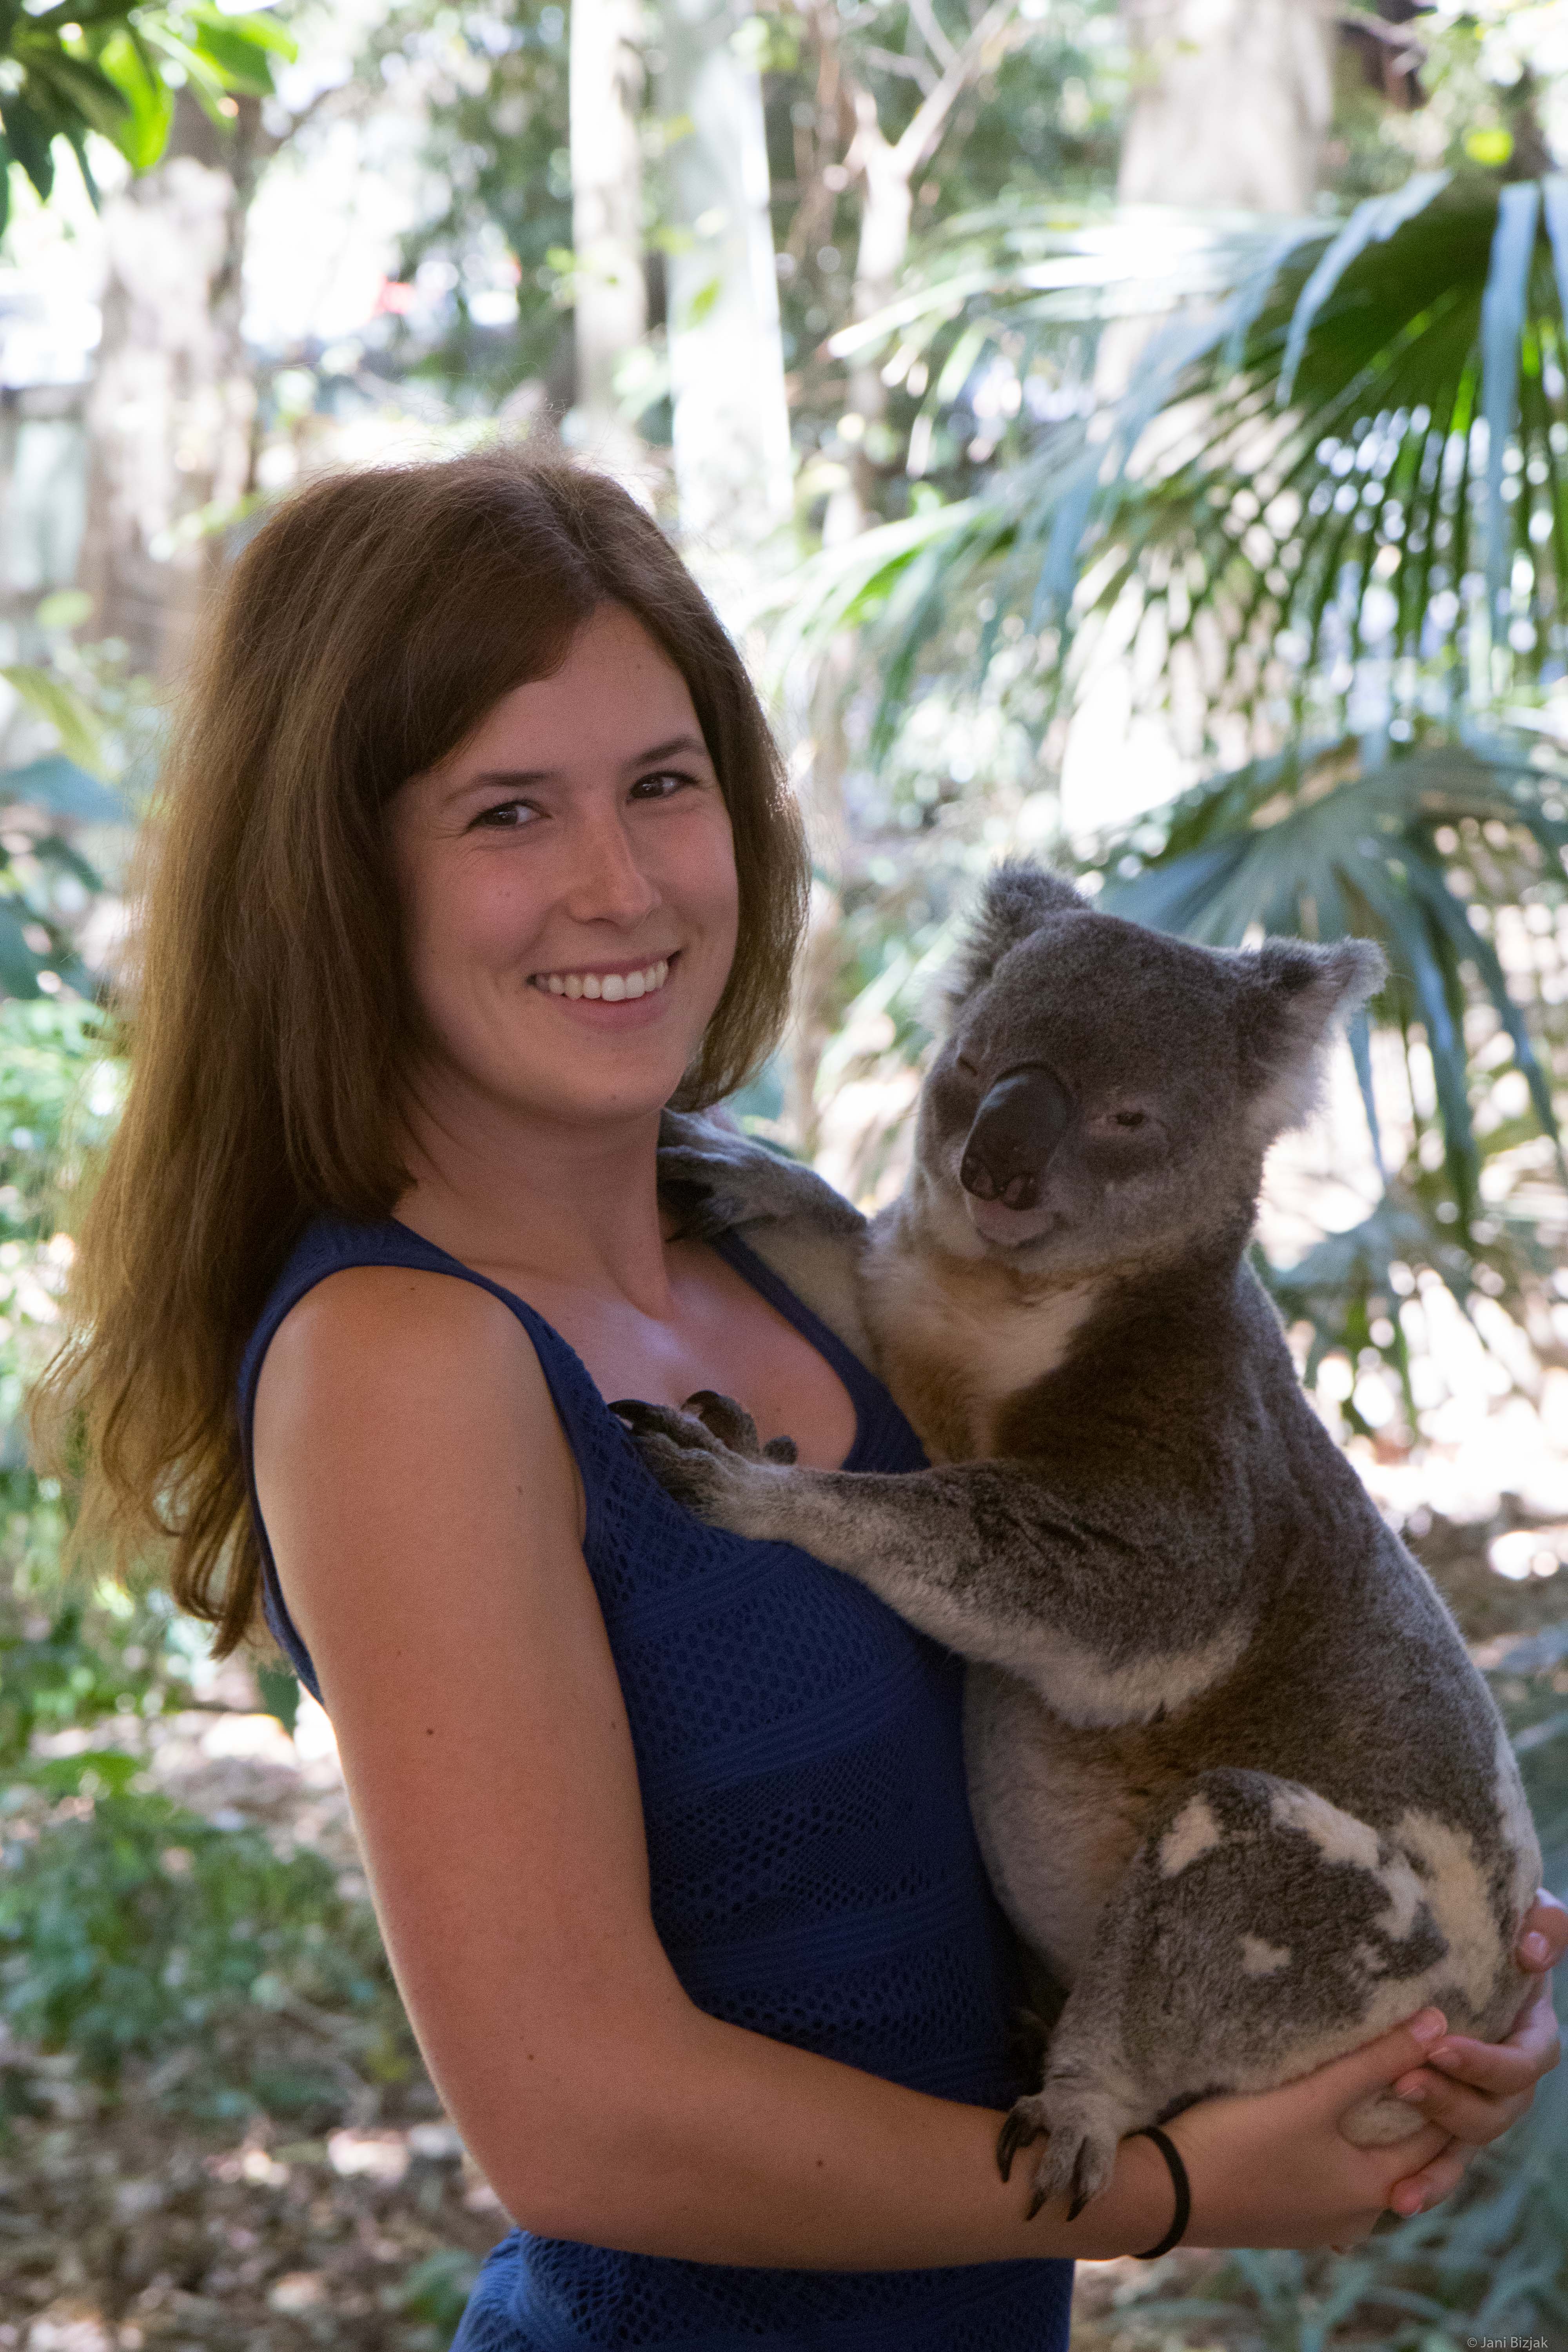 Veronika holding a koala